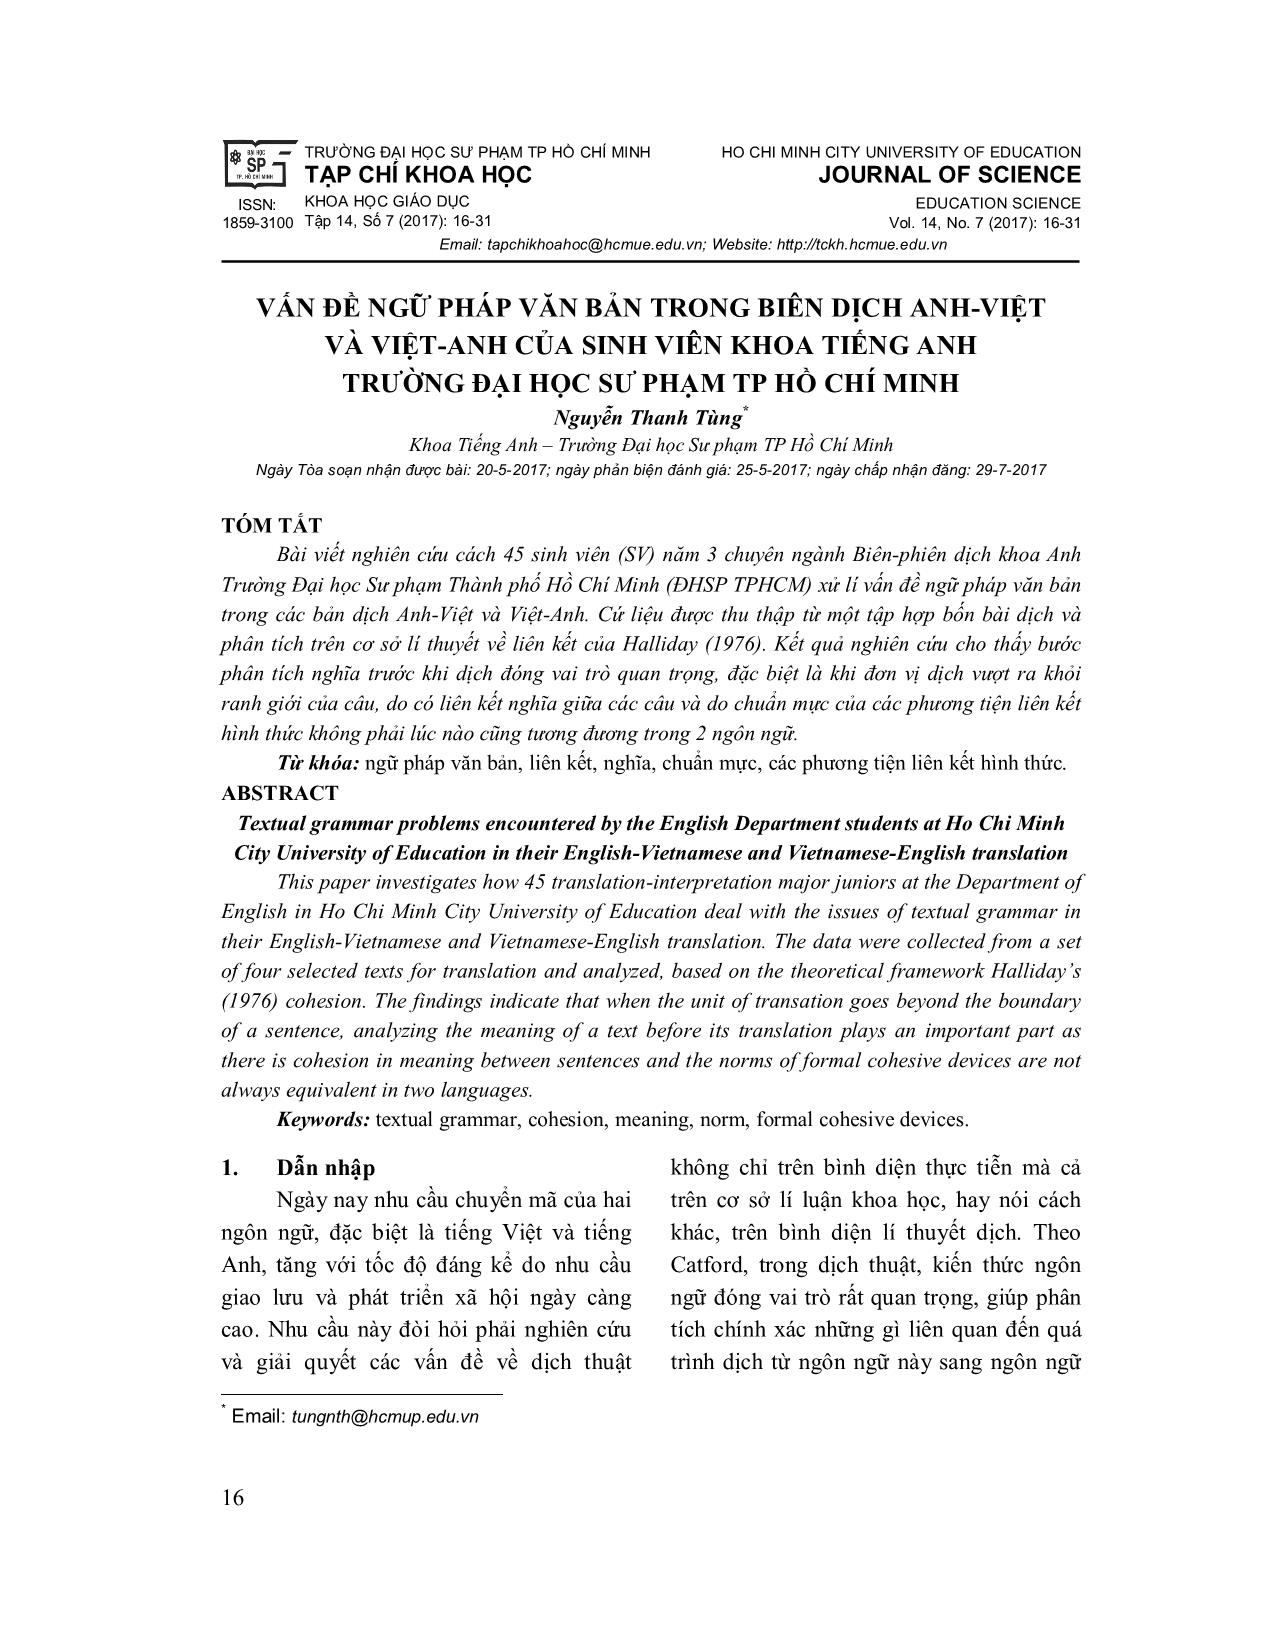 Vấn đề ngữ pháp văn bản trong biên dịch Anh - Việt và việt-anh của sinh viên khoa tiếng Anh trường đại học sư phạm Tp Hồ Chí Minh trang 1